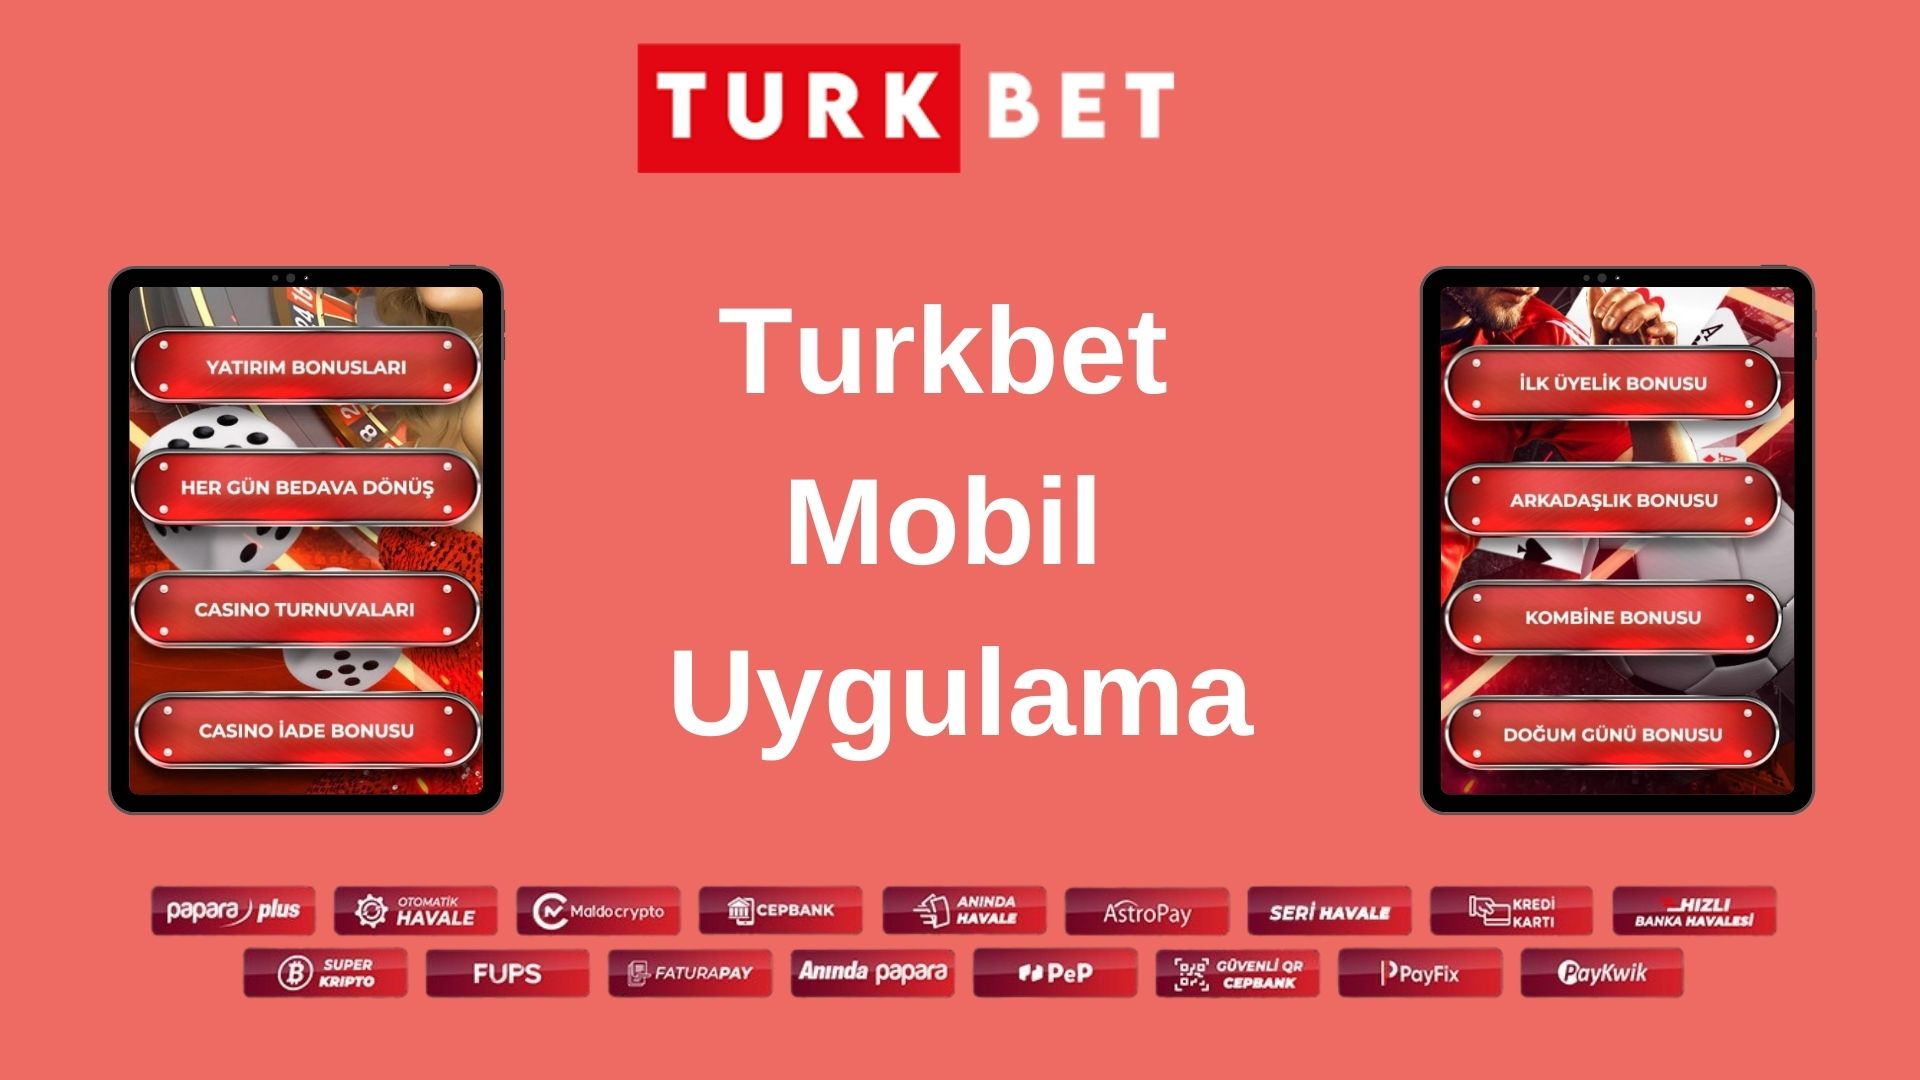 Turkbet Mobil Uygulama